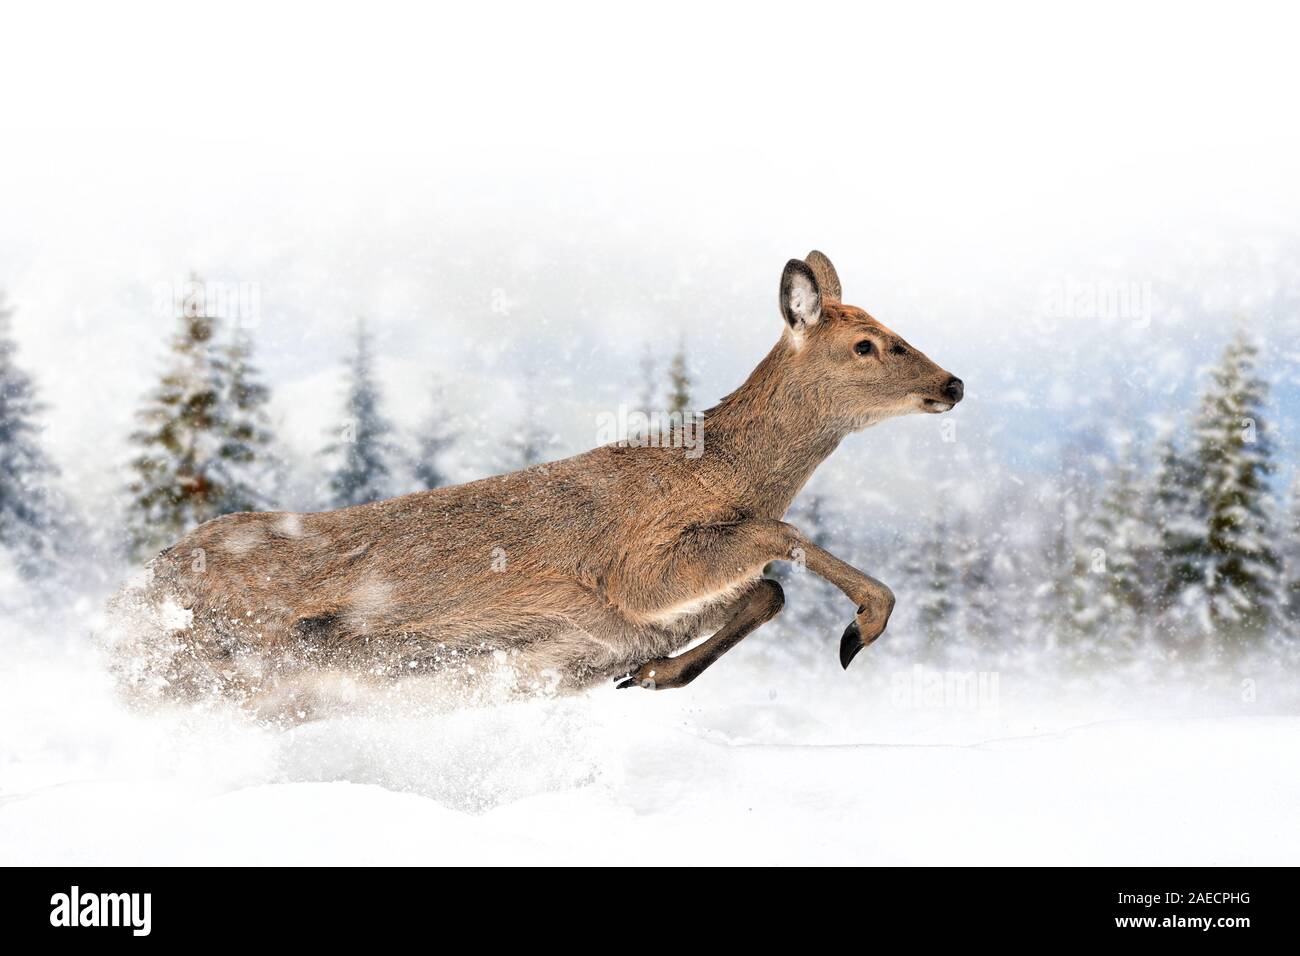 Rehe im Schnee im Winter Hintergrund. Neues Jahr Karte. Stockfoto